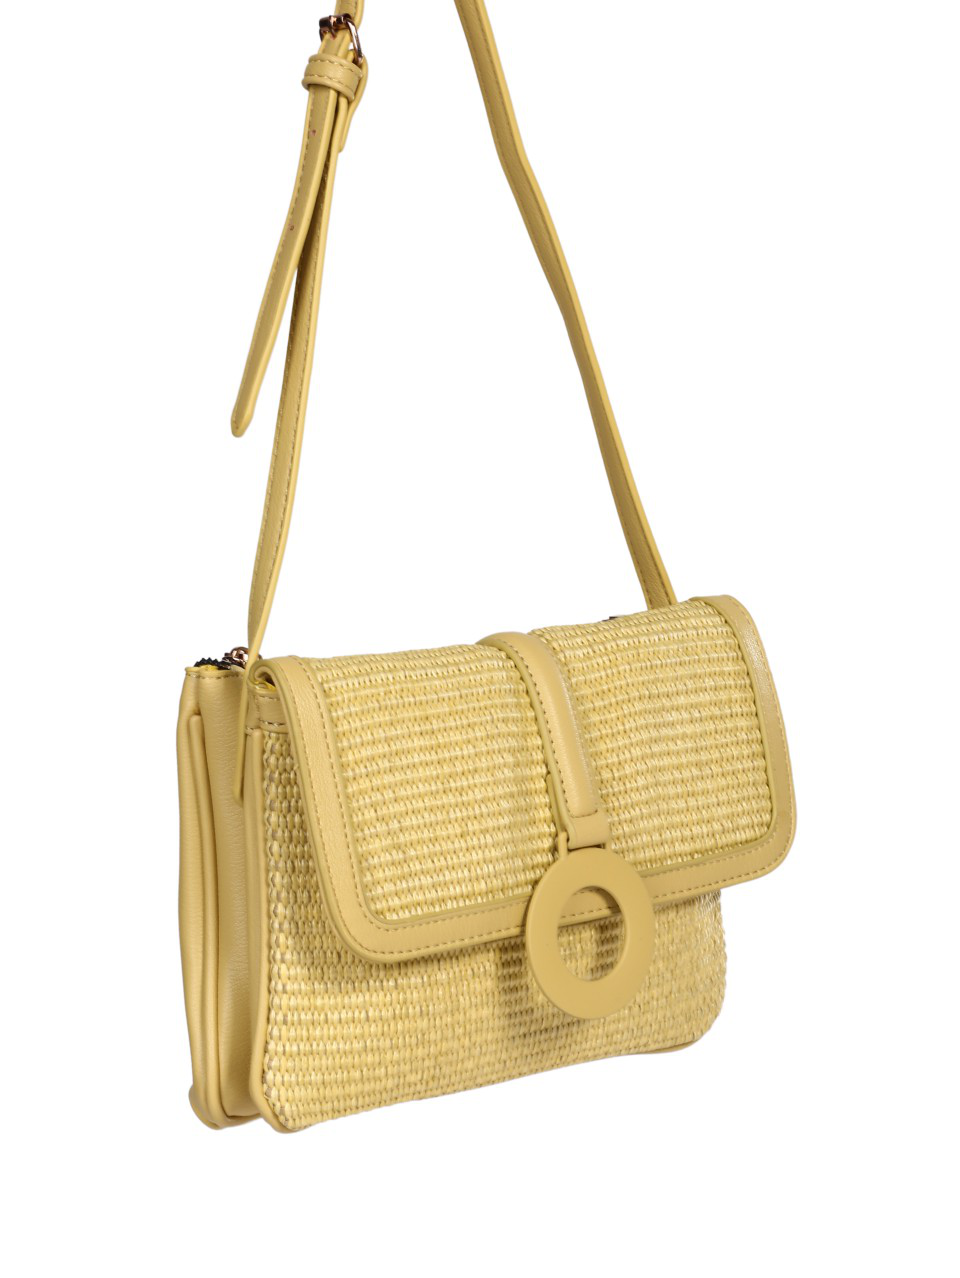 Ежедневна дамска чанта в жълто 9Q-24268 yellow